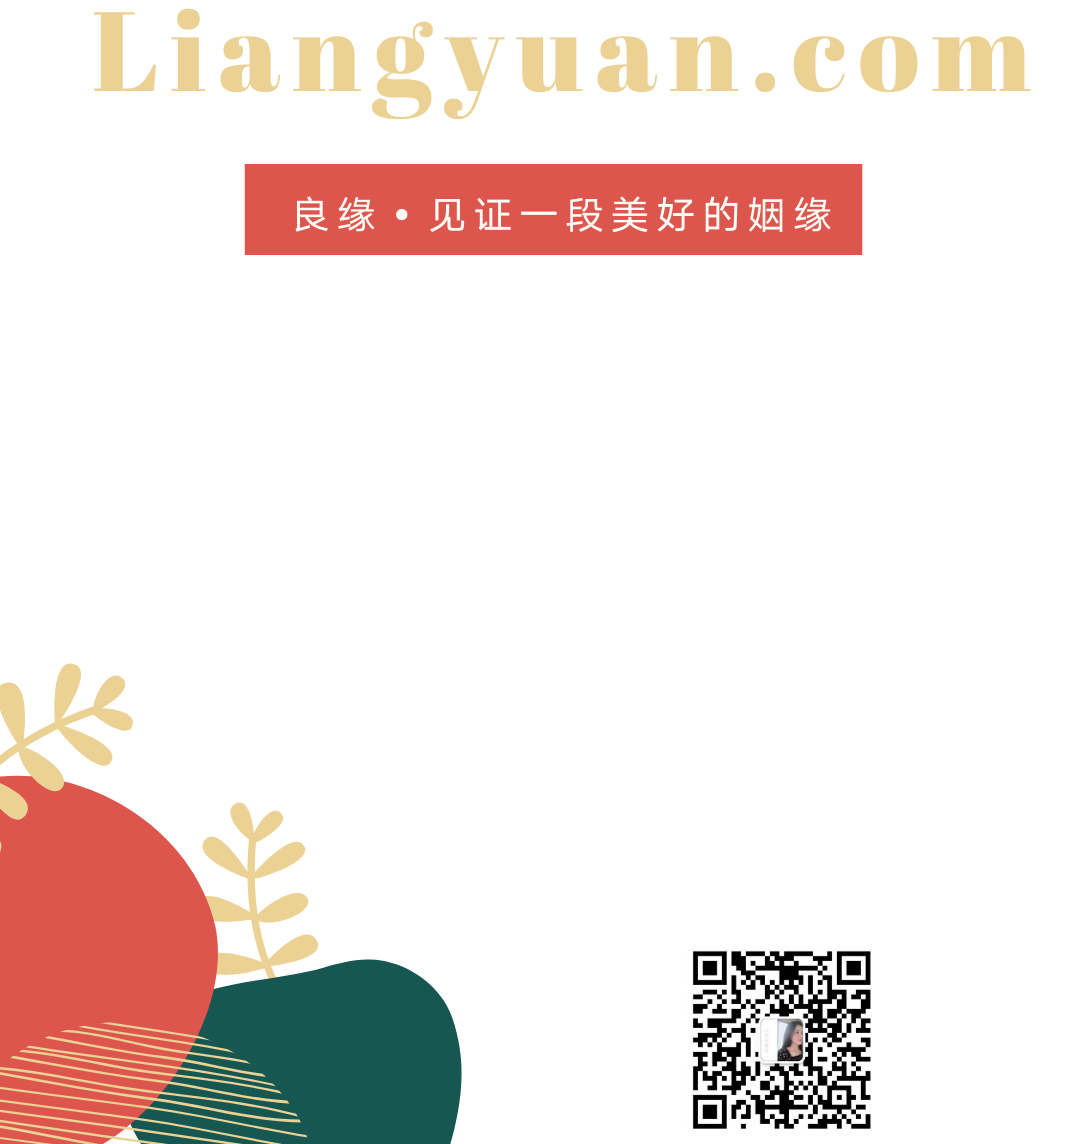 liangyuan.com